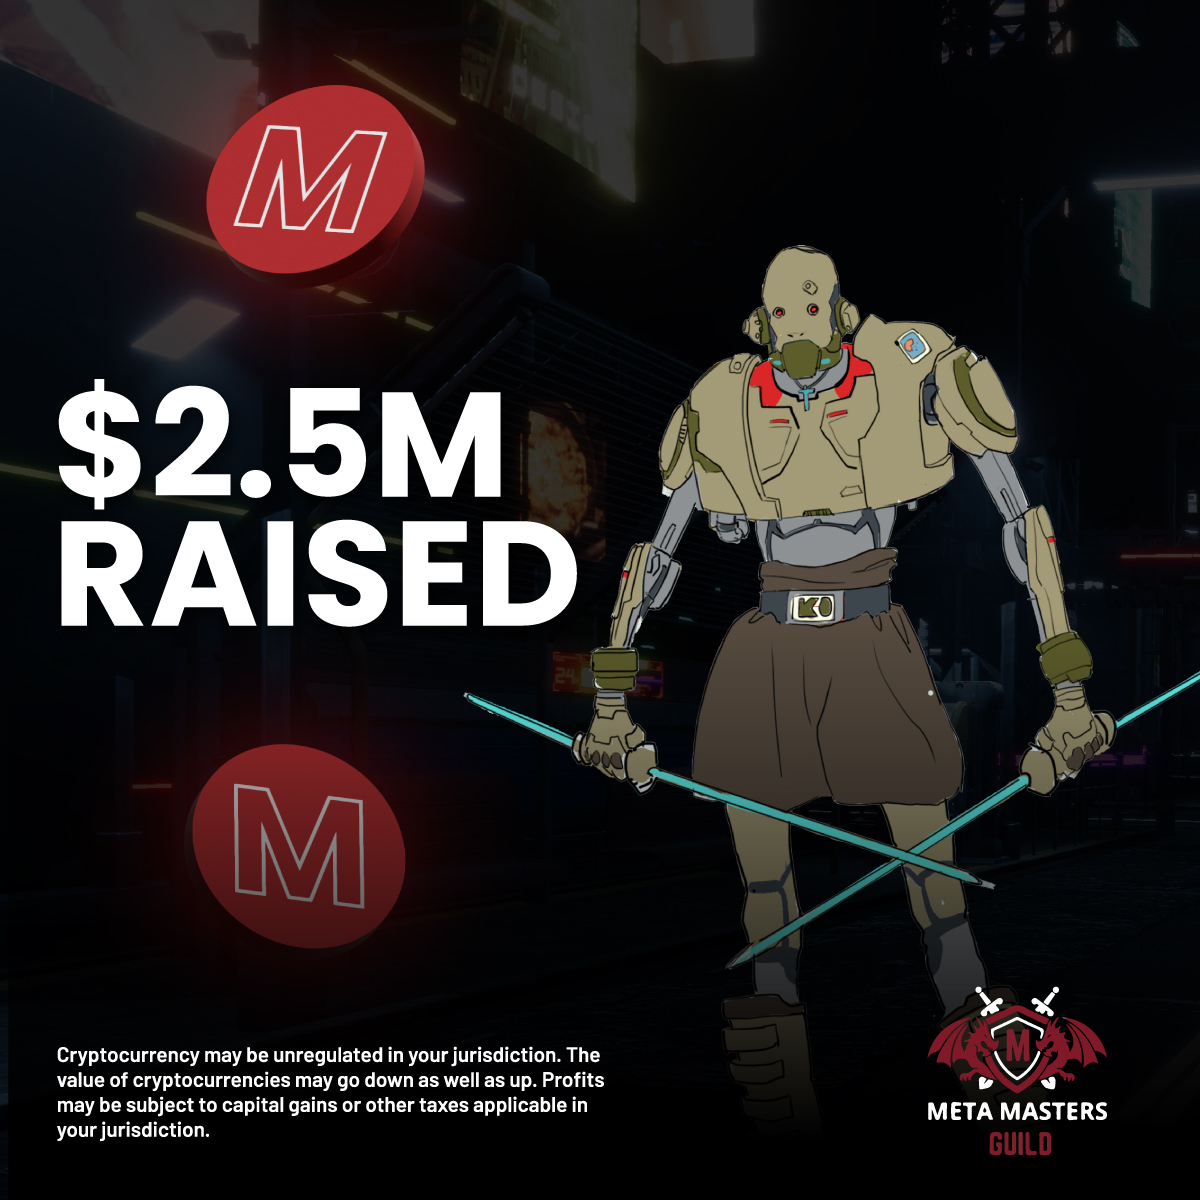 Meta Masters Guild Ön Satışında 2.5 Milyon Dolar Toplandı